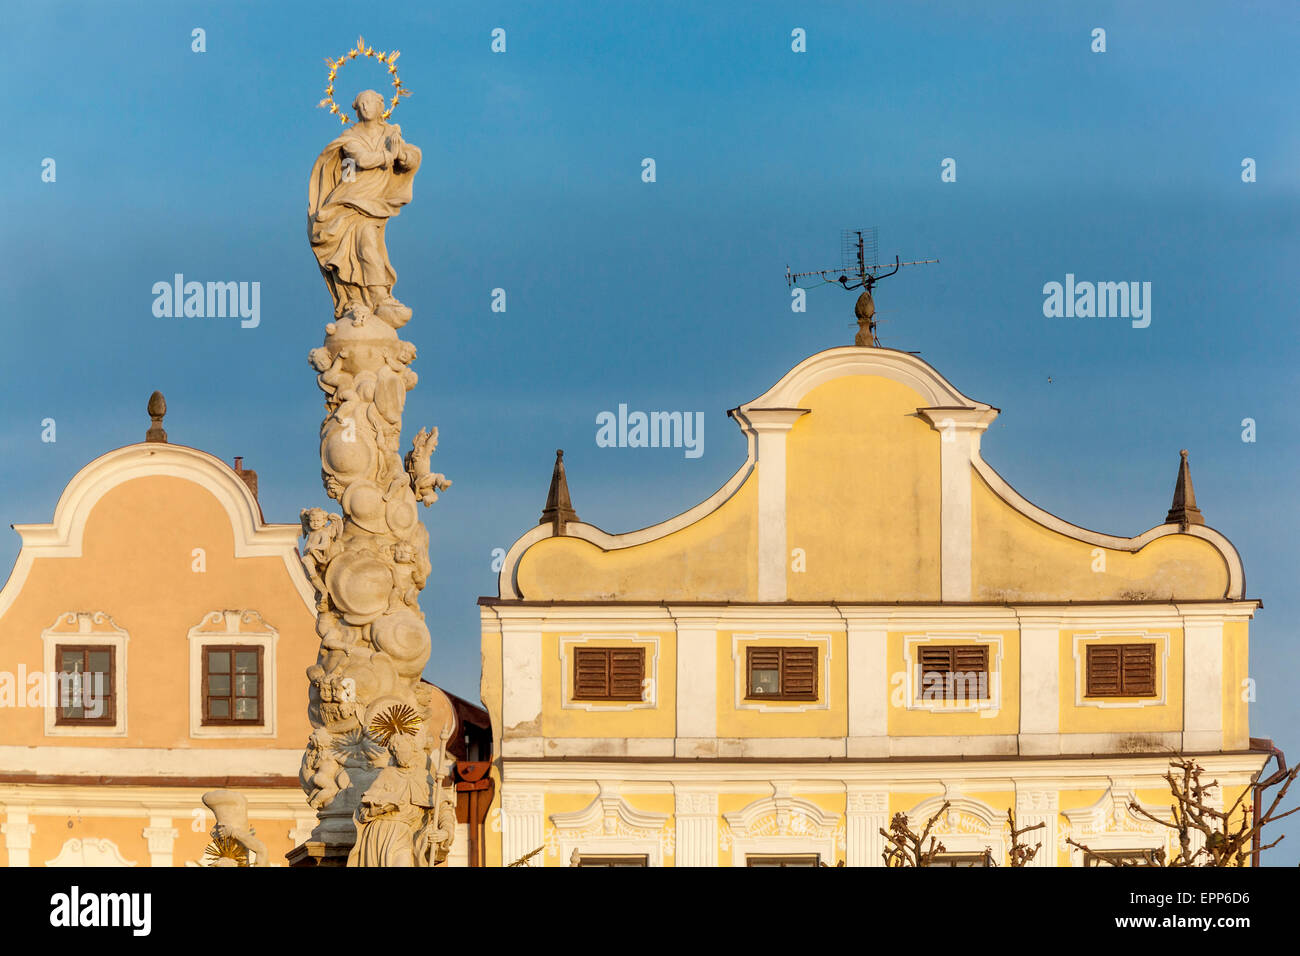 République tchèque, Telc, ville du patrimoine mondial de l'UNESCO, de la place principale, façade townhouses Banque D'Images